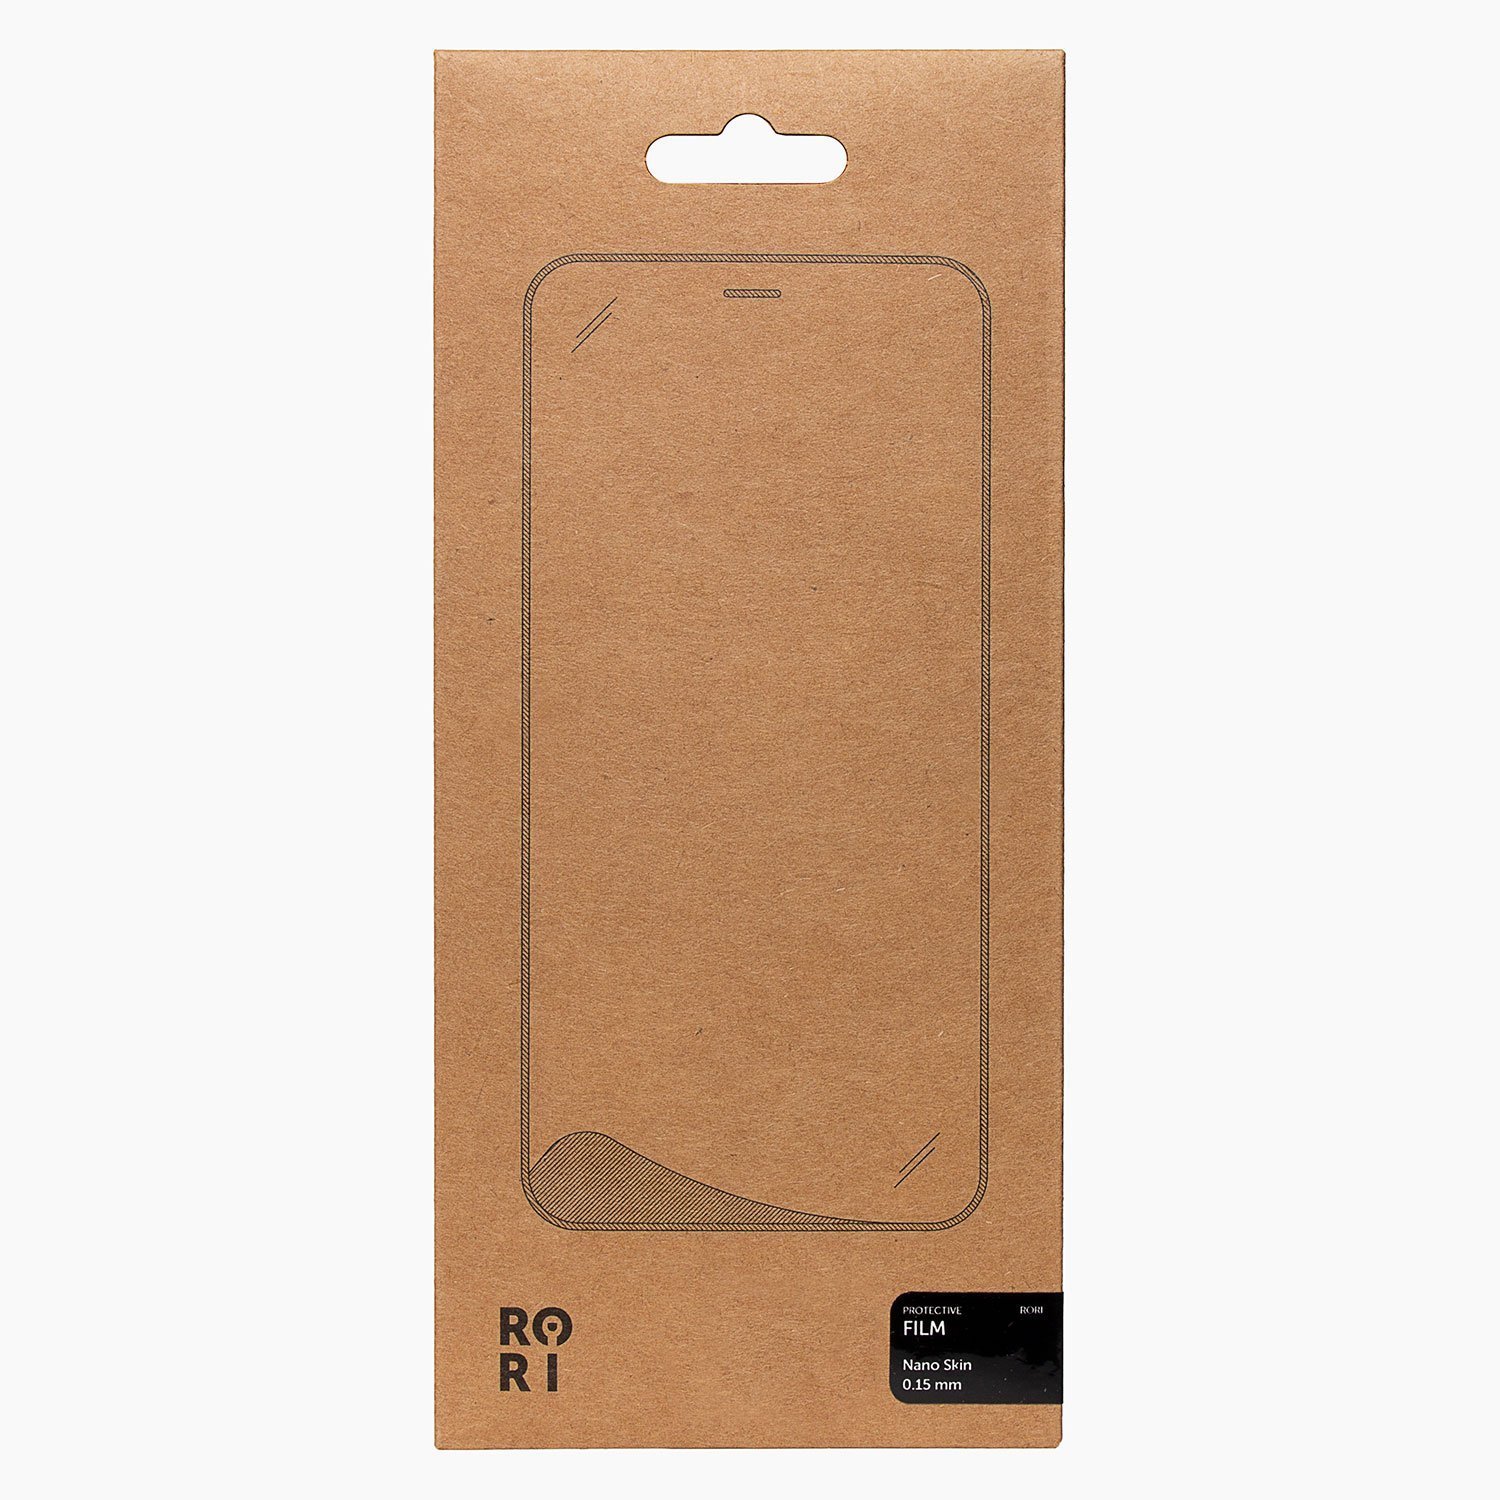 Защитная пленка Rori Polymer для экрана смартфона Huawei Honor X10, FullScreen, черная рамка (119514)